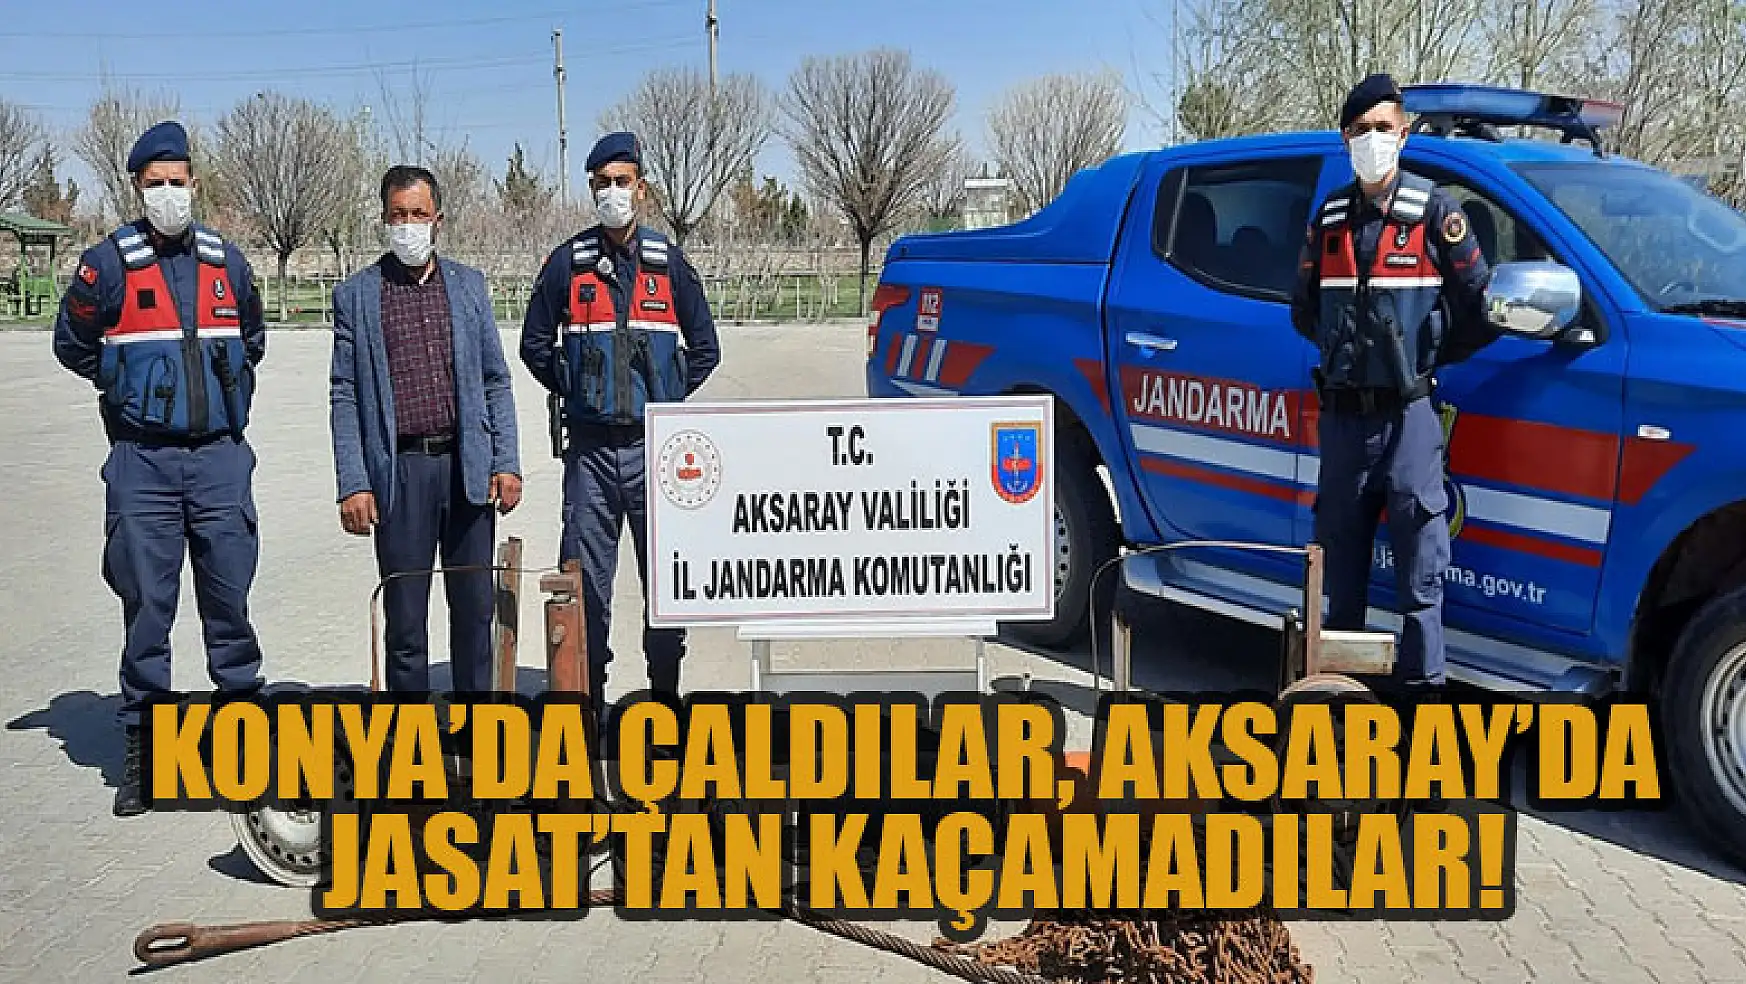 Konya'da çaldılar, Aksaray'da JASAT'tan kaçamadılar